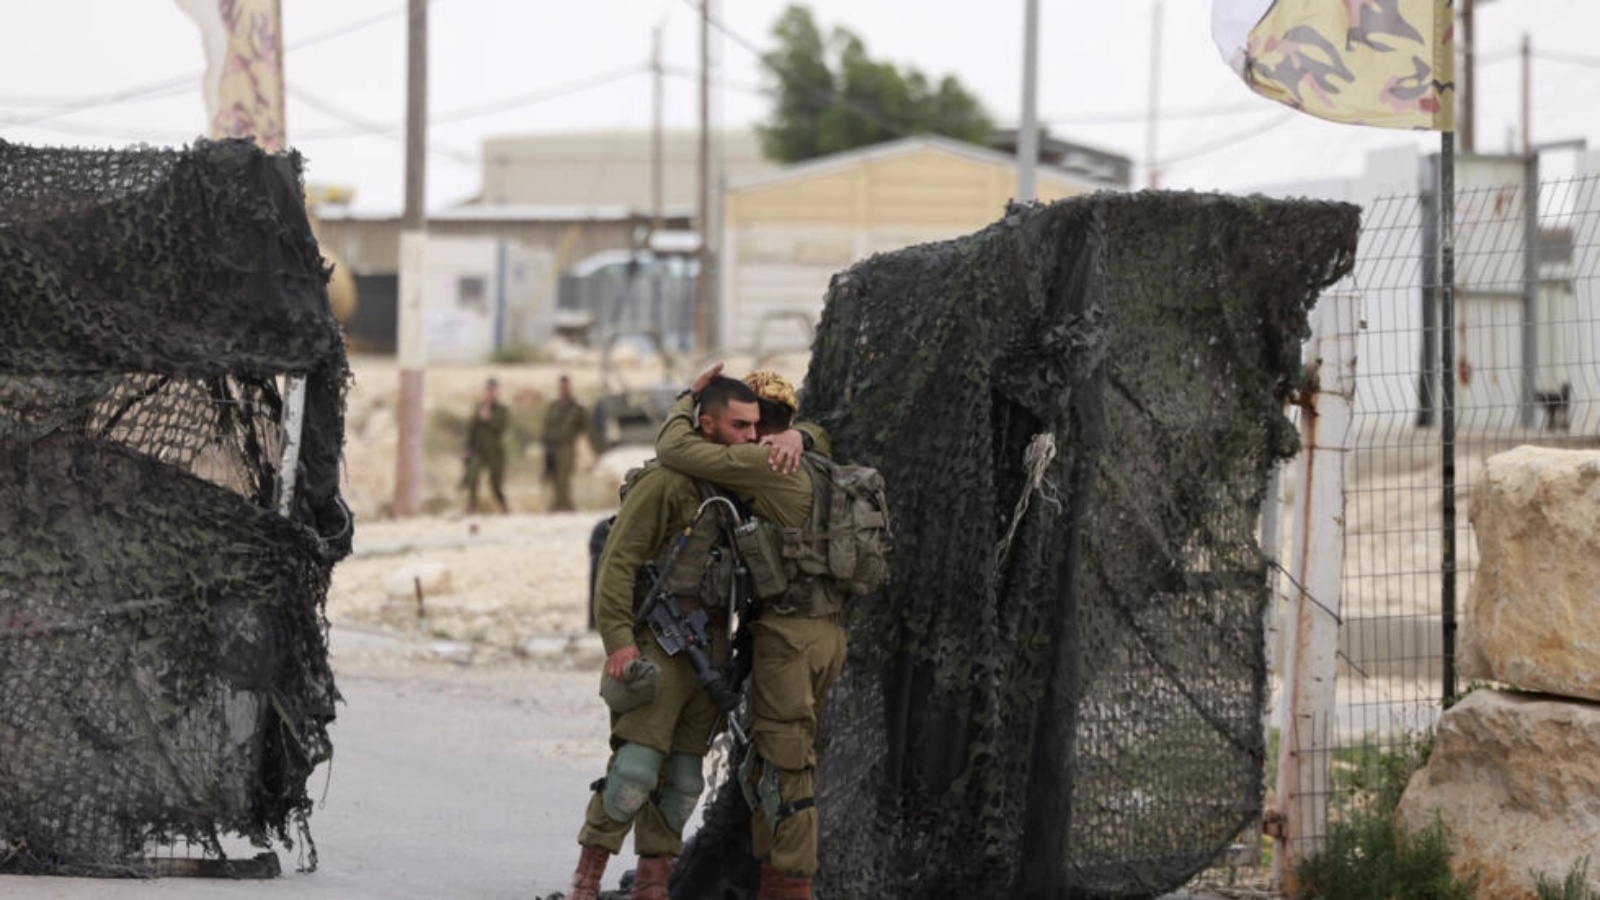 جنود إسرائيليون يواسون بعضهم البعض قرب قاعدة حاريف العسكرية الإسرائيلية على الحدود مع مصر حيث يشتبه بإقدام عنصر أمن مصري على قتل ثلاثة جنود إسرائيليين في حادثة خطيرة ونادرة وقعت في الثالث من يونيو 2023